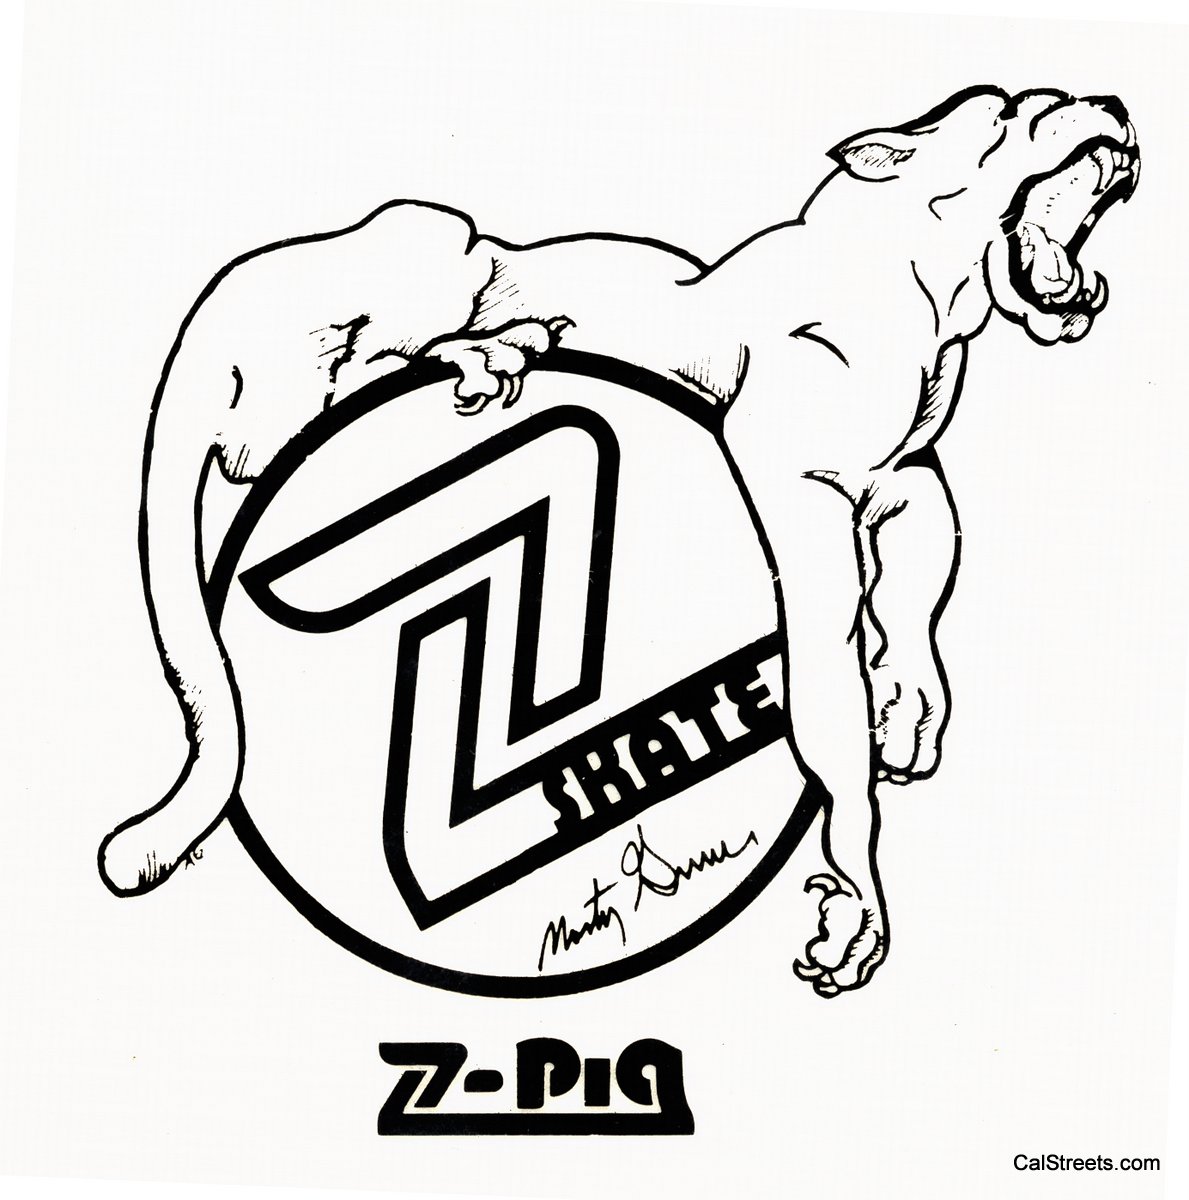 Z-Pig-Lion-Monty2.jpg